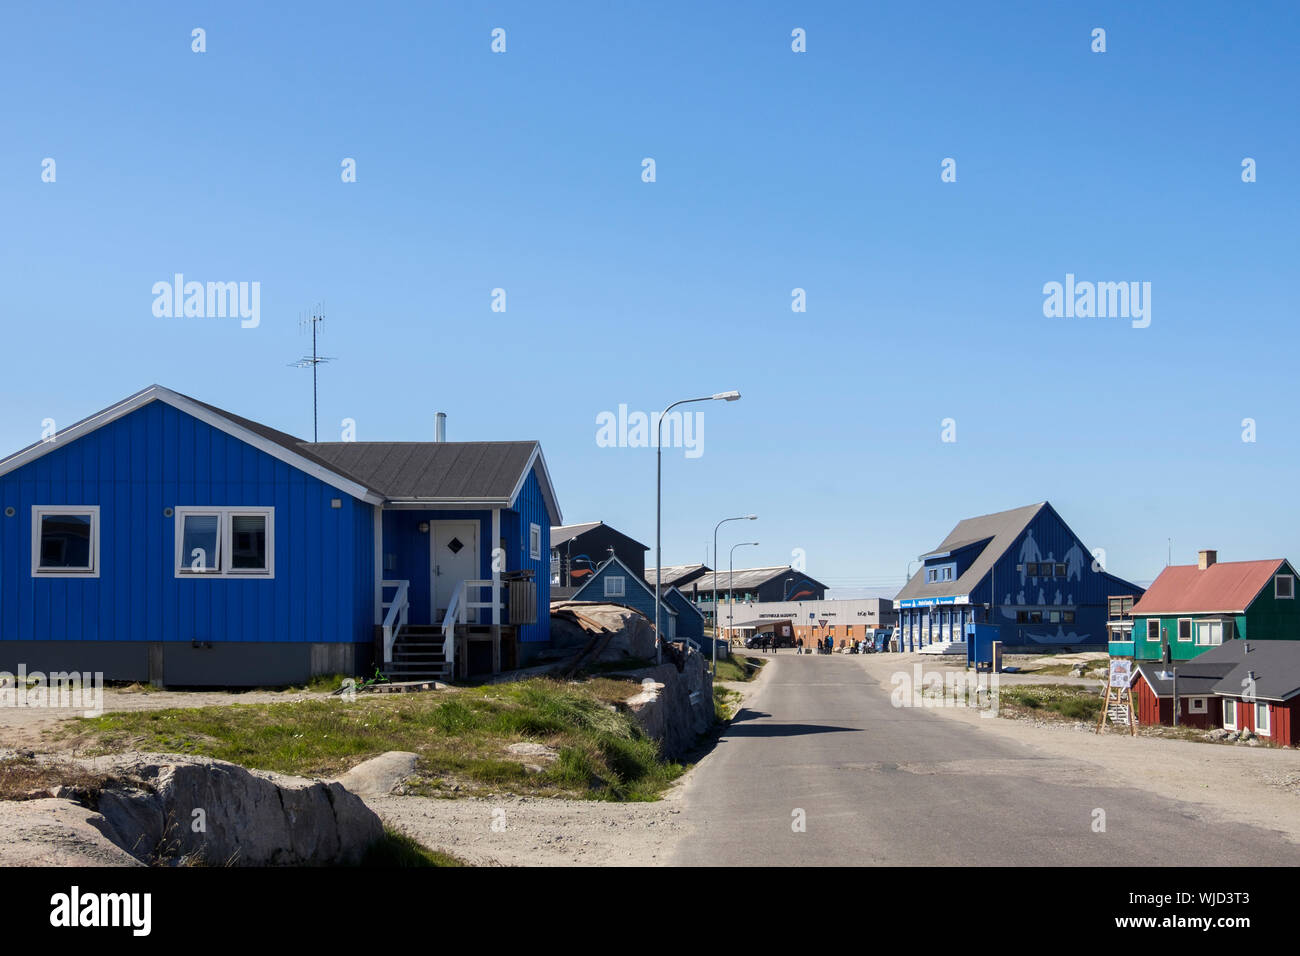 Typischen Holzhäusern auf der Straße, die zu Stadt- und Touristenzentrum. Ilulissat (jakobshavn), Qaasuitsup, Grönland Stockfoto